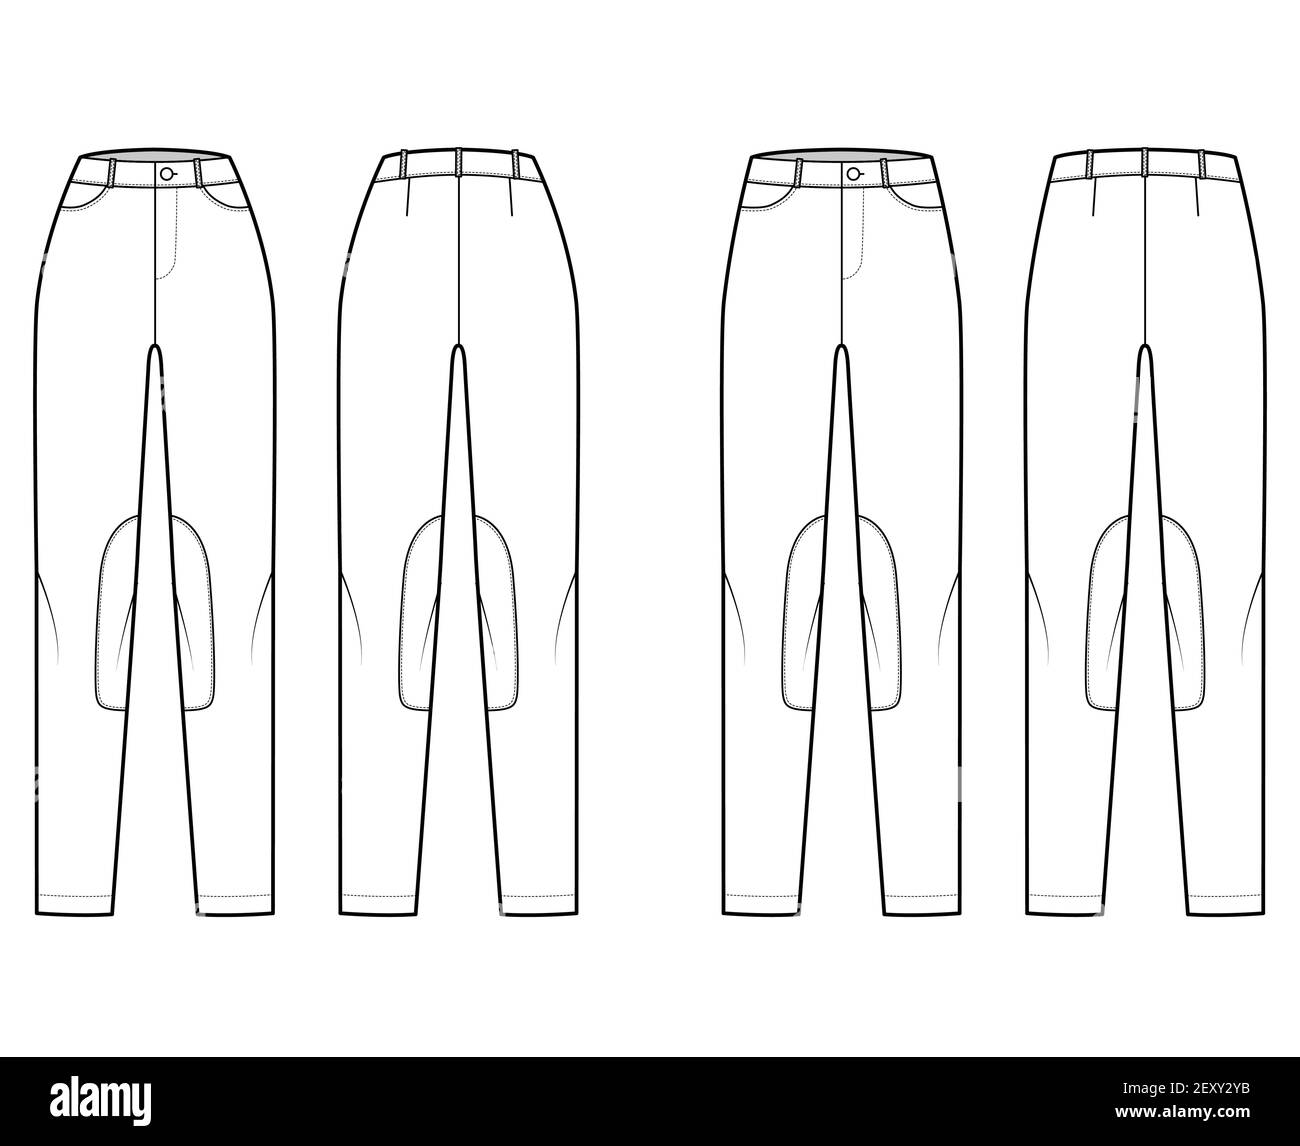 Ensemble de jeans Kentucky Jodhpurs pantalon denim illustration technique de la mode avec taille basse normale, taille haute, passants de ceinture, pleine longueur. Modèle plat à l'avant à l'arrière, style blanc. Maquette CAD pour femmes et hommes Illustration de Vecteur